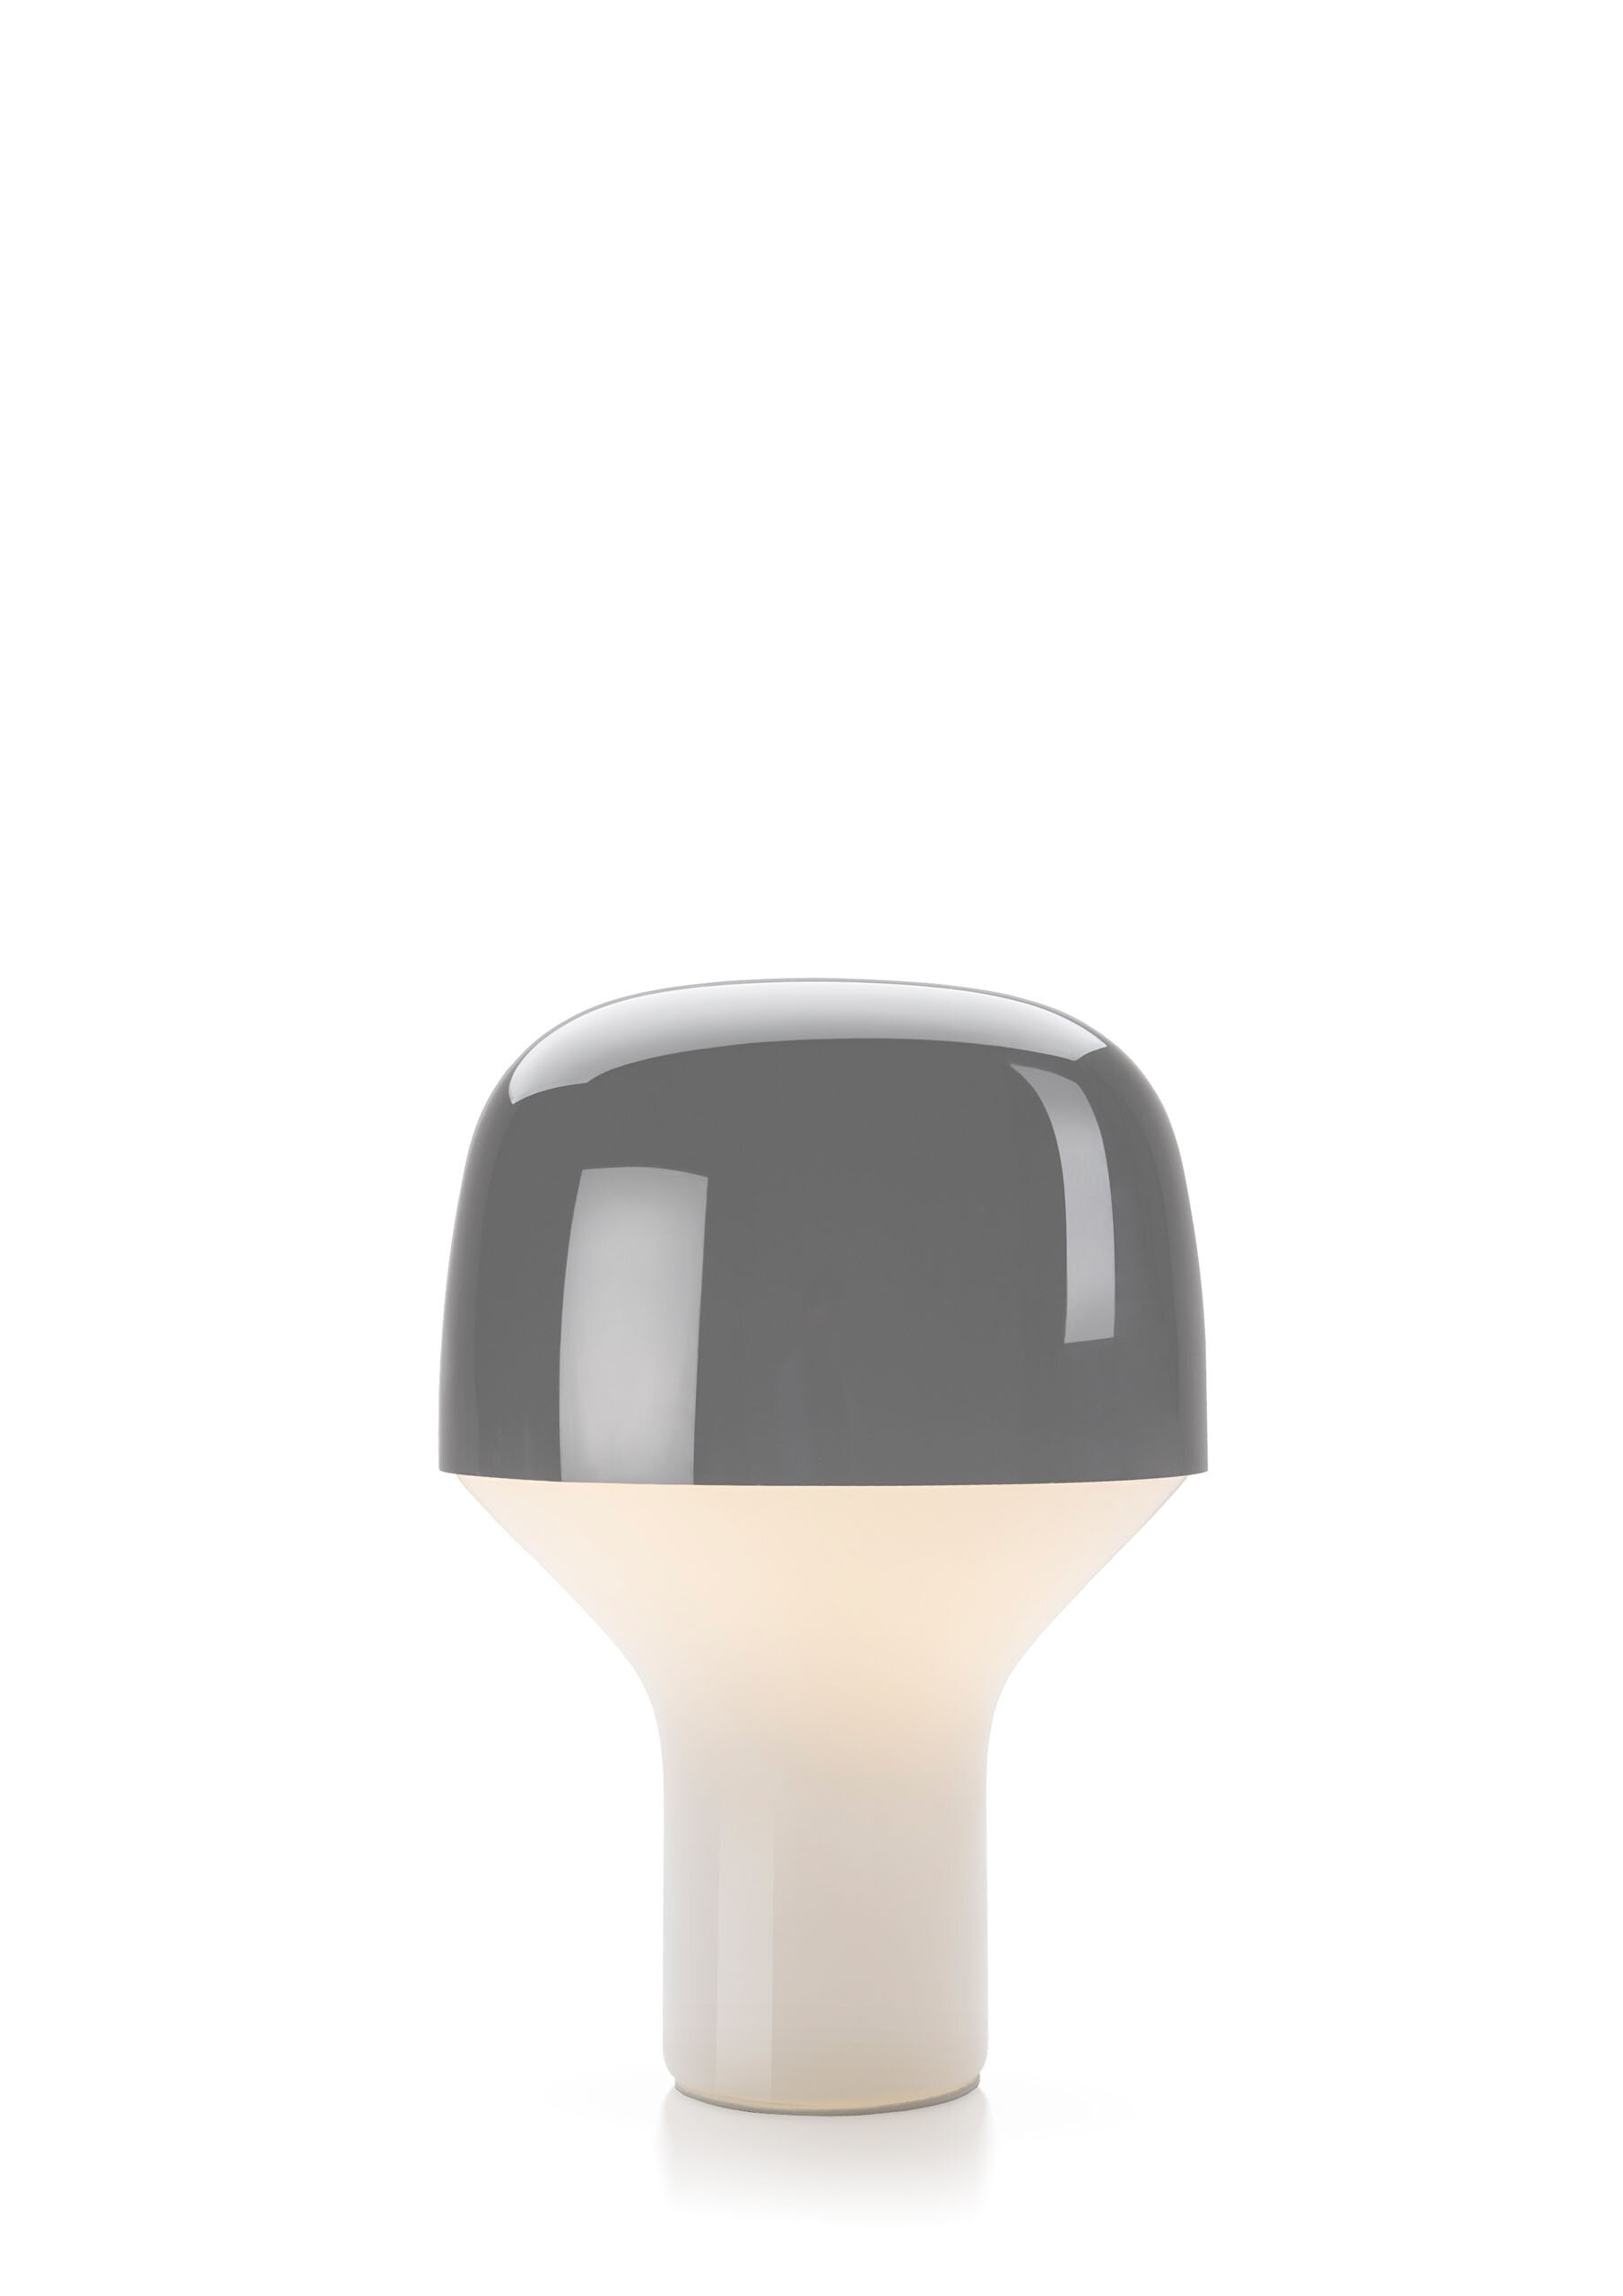 teo-cap-table-lamp-gray-cutout.jpg